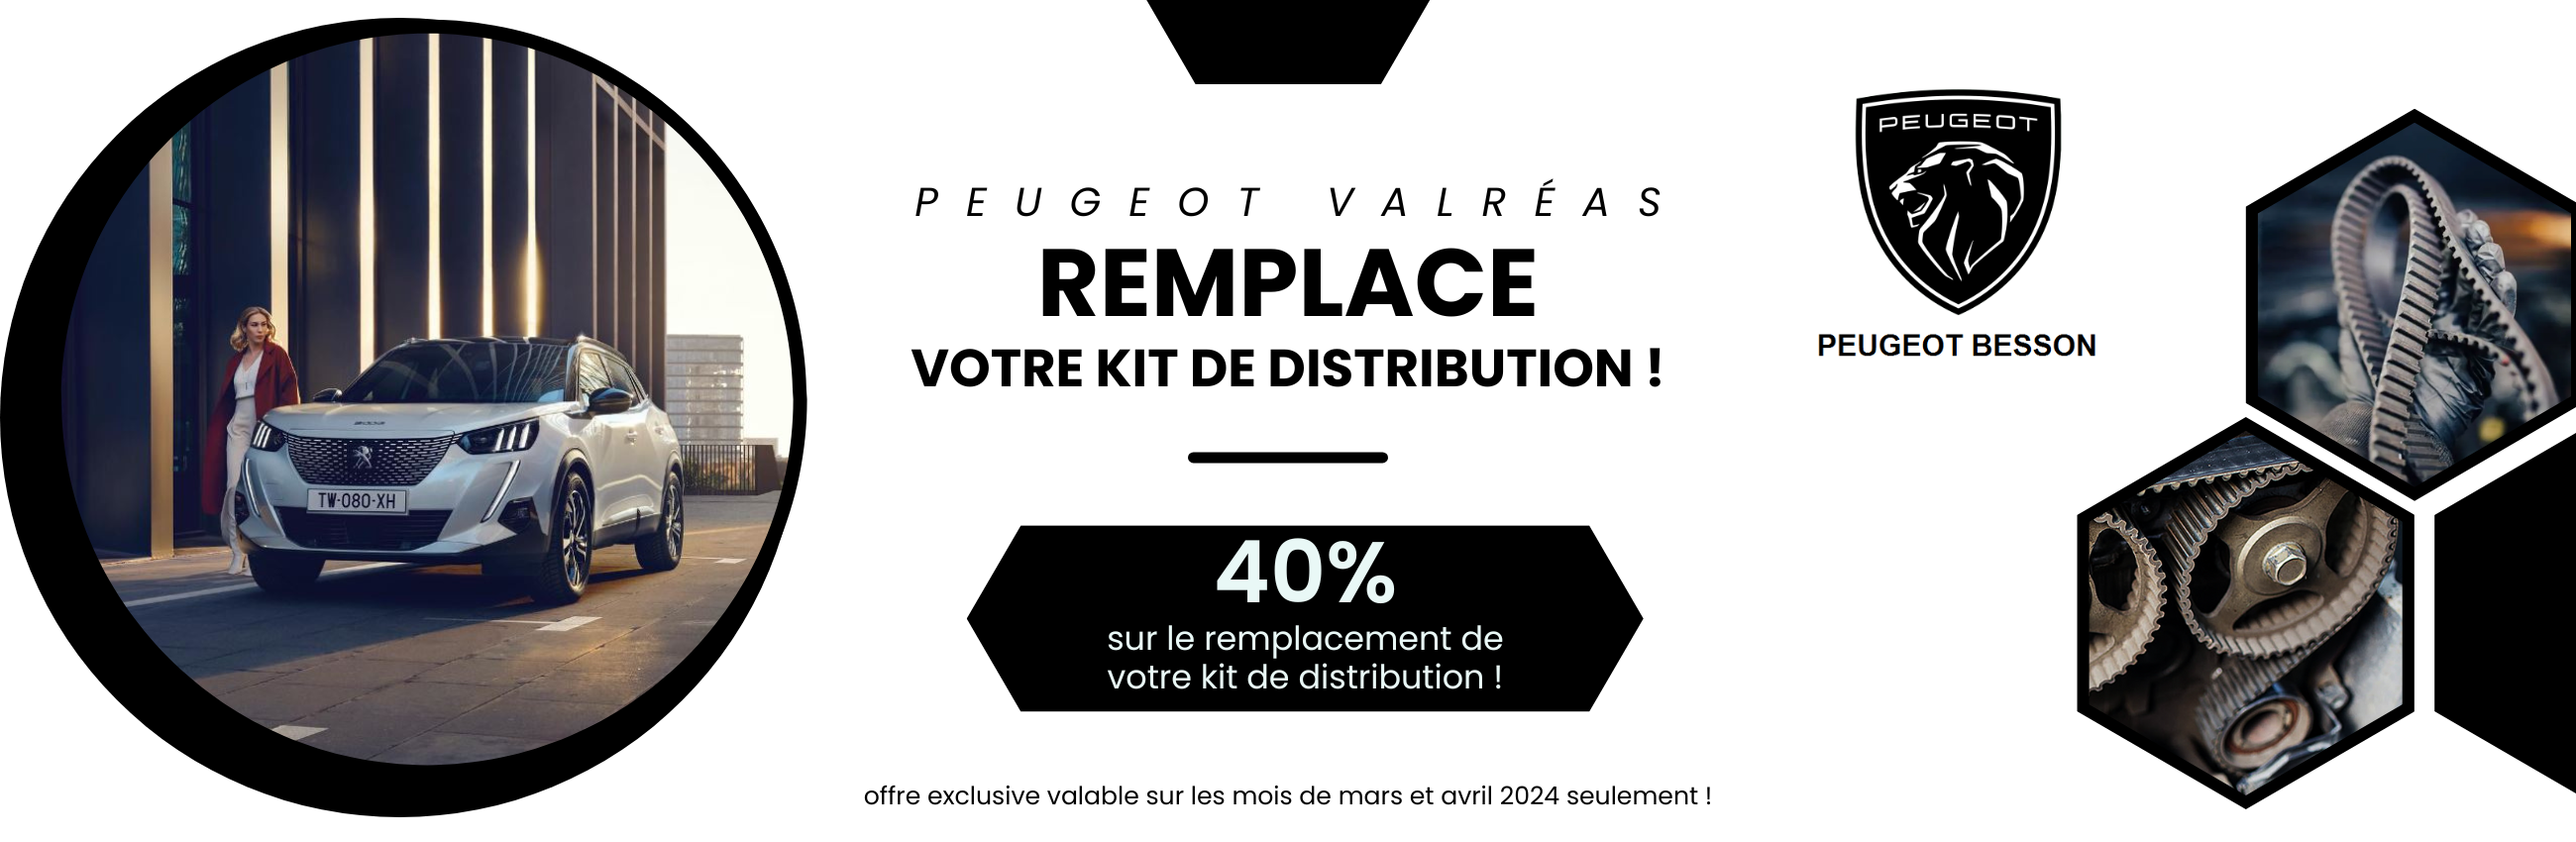 Offre exclusive ! Peugeot valréas vous offre 40 % sur le remplacement de votre kit de distribution !